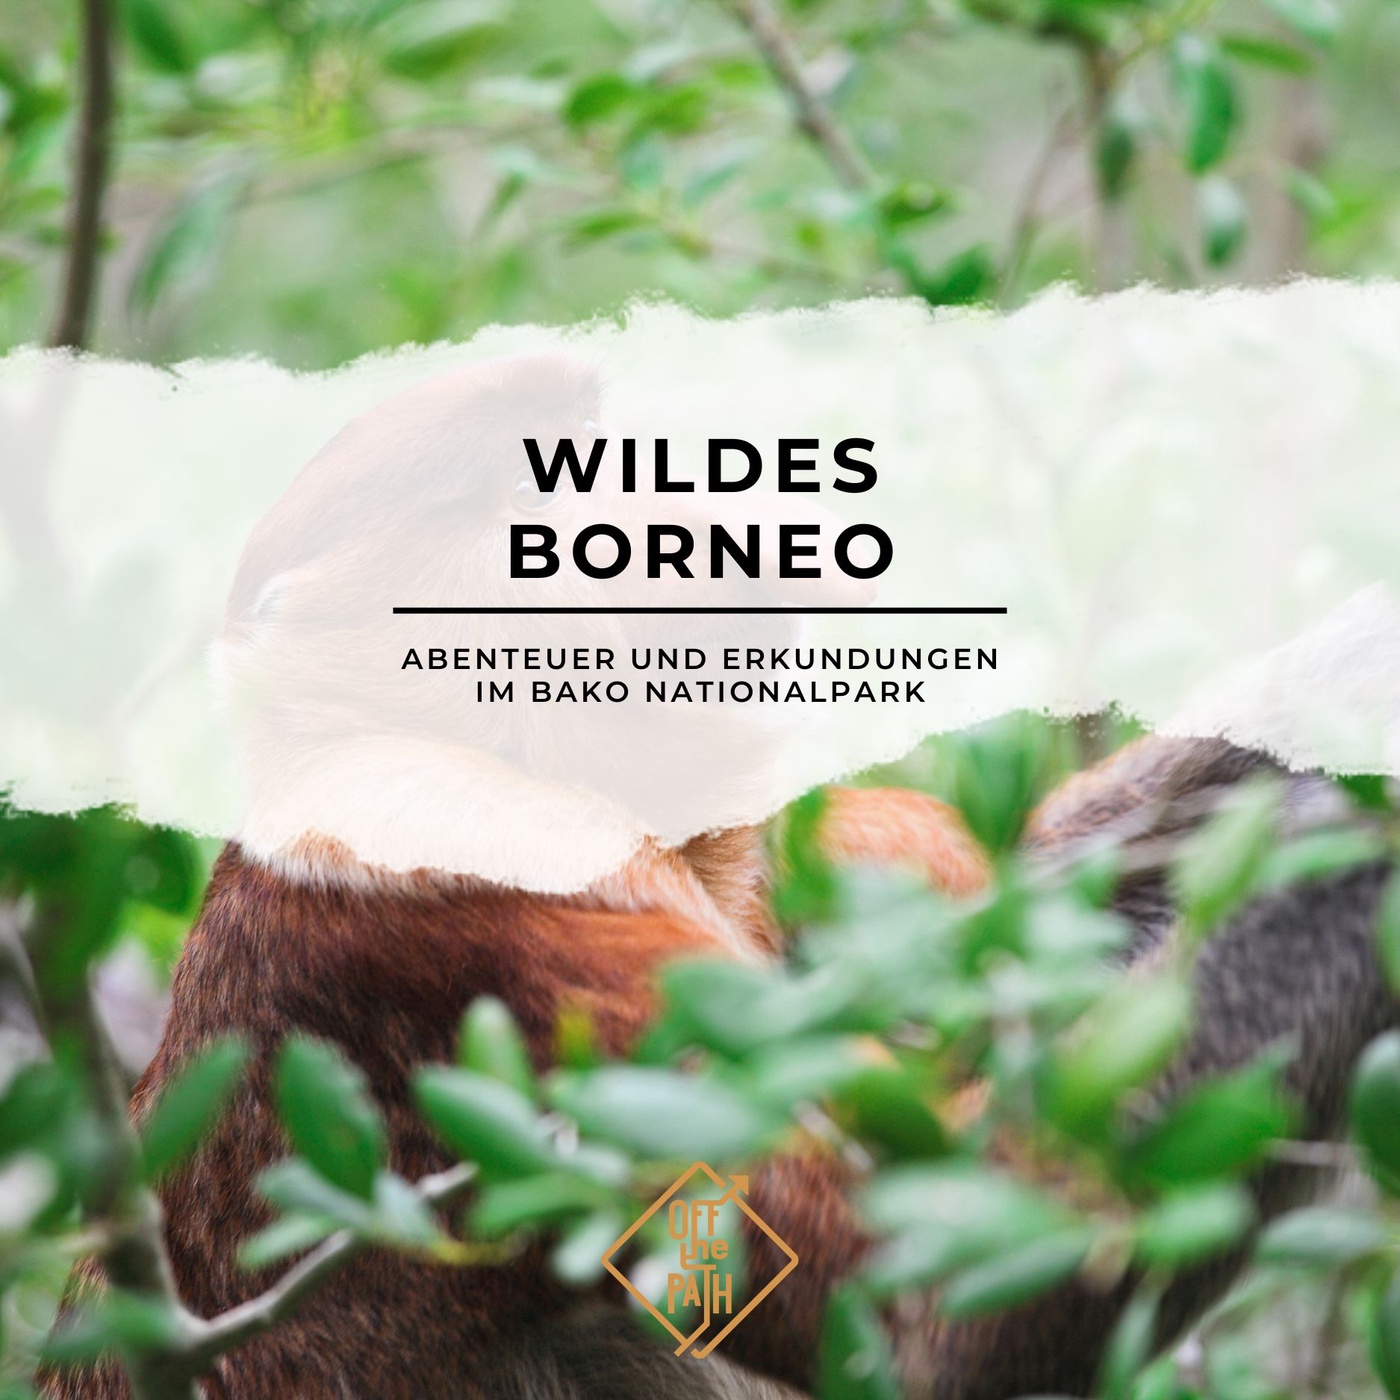 Wildes Borneo: Abenteuer und Erkundungen im Bako Nationalpark